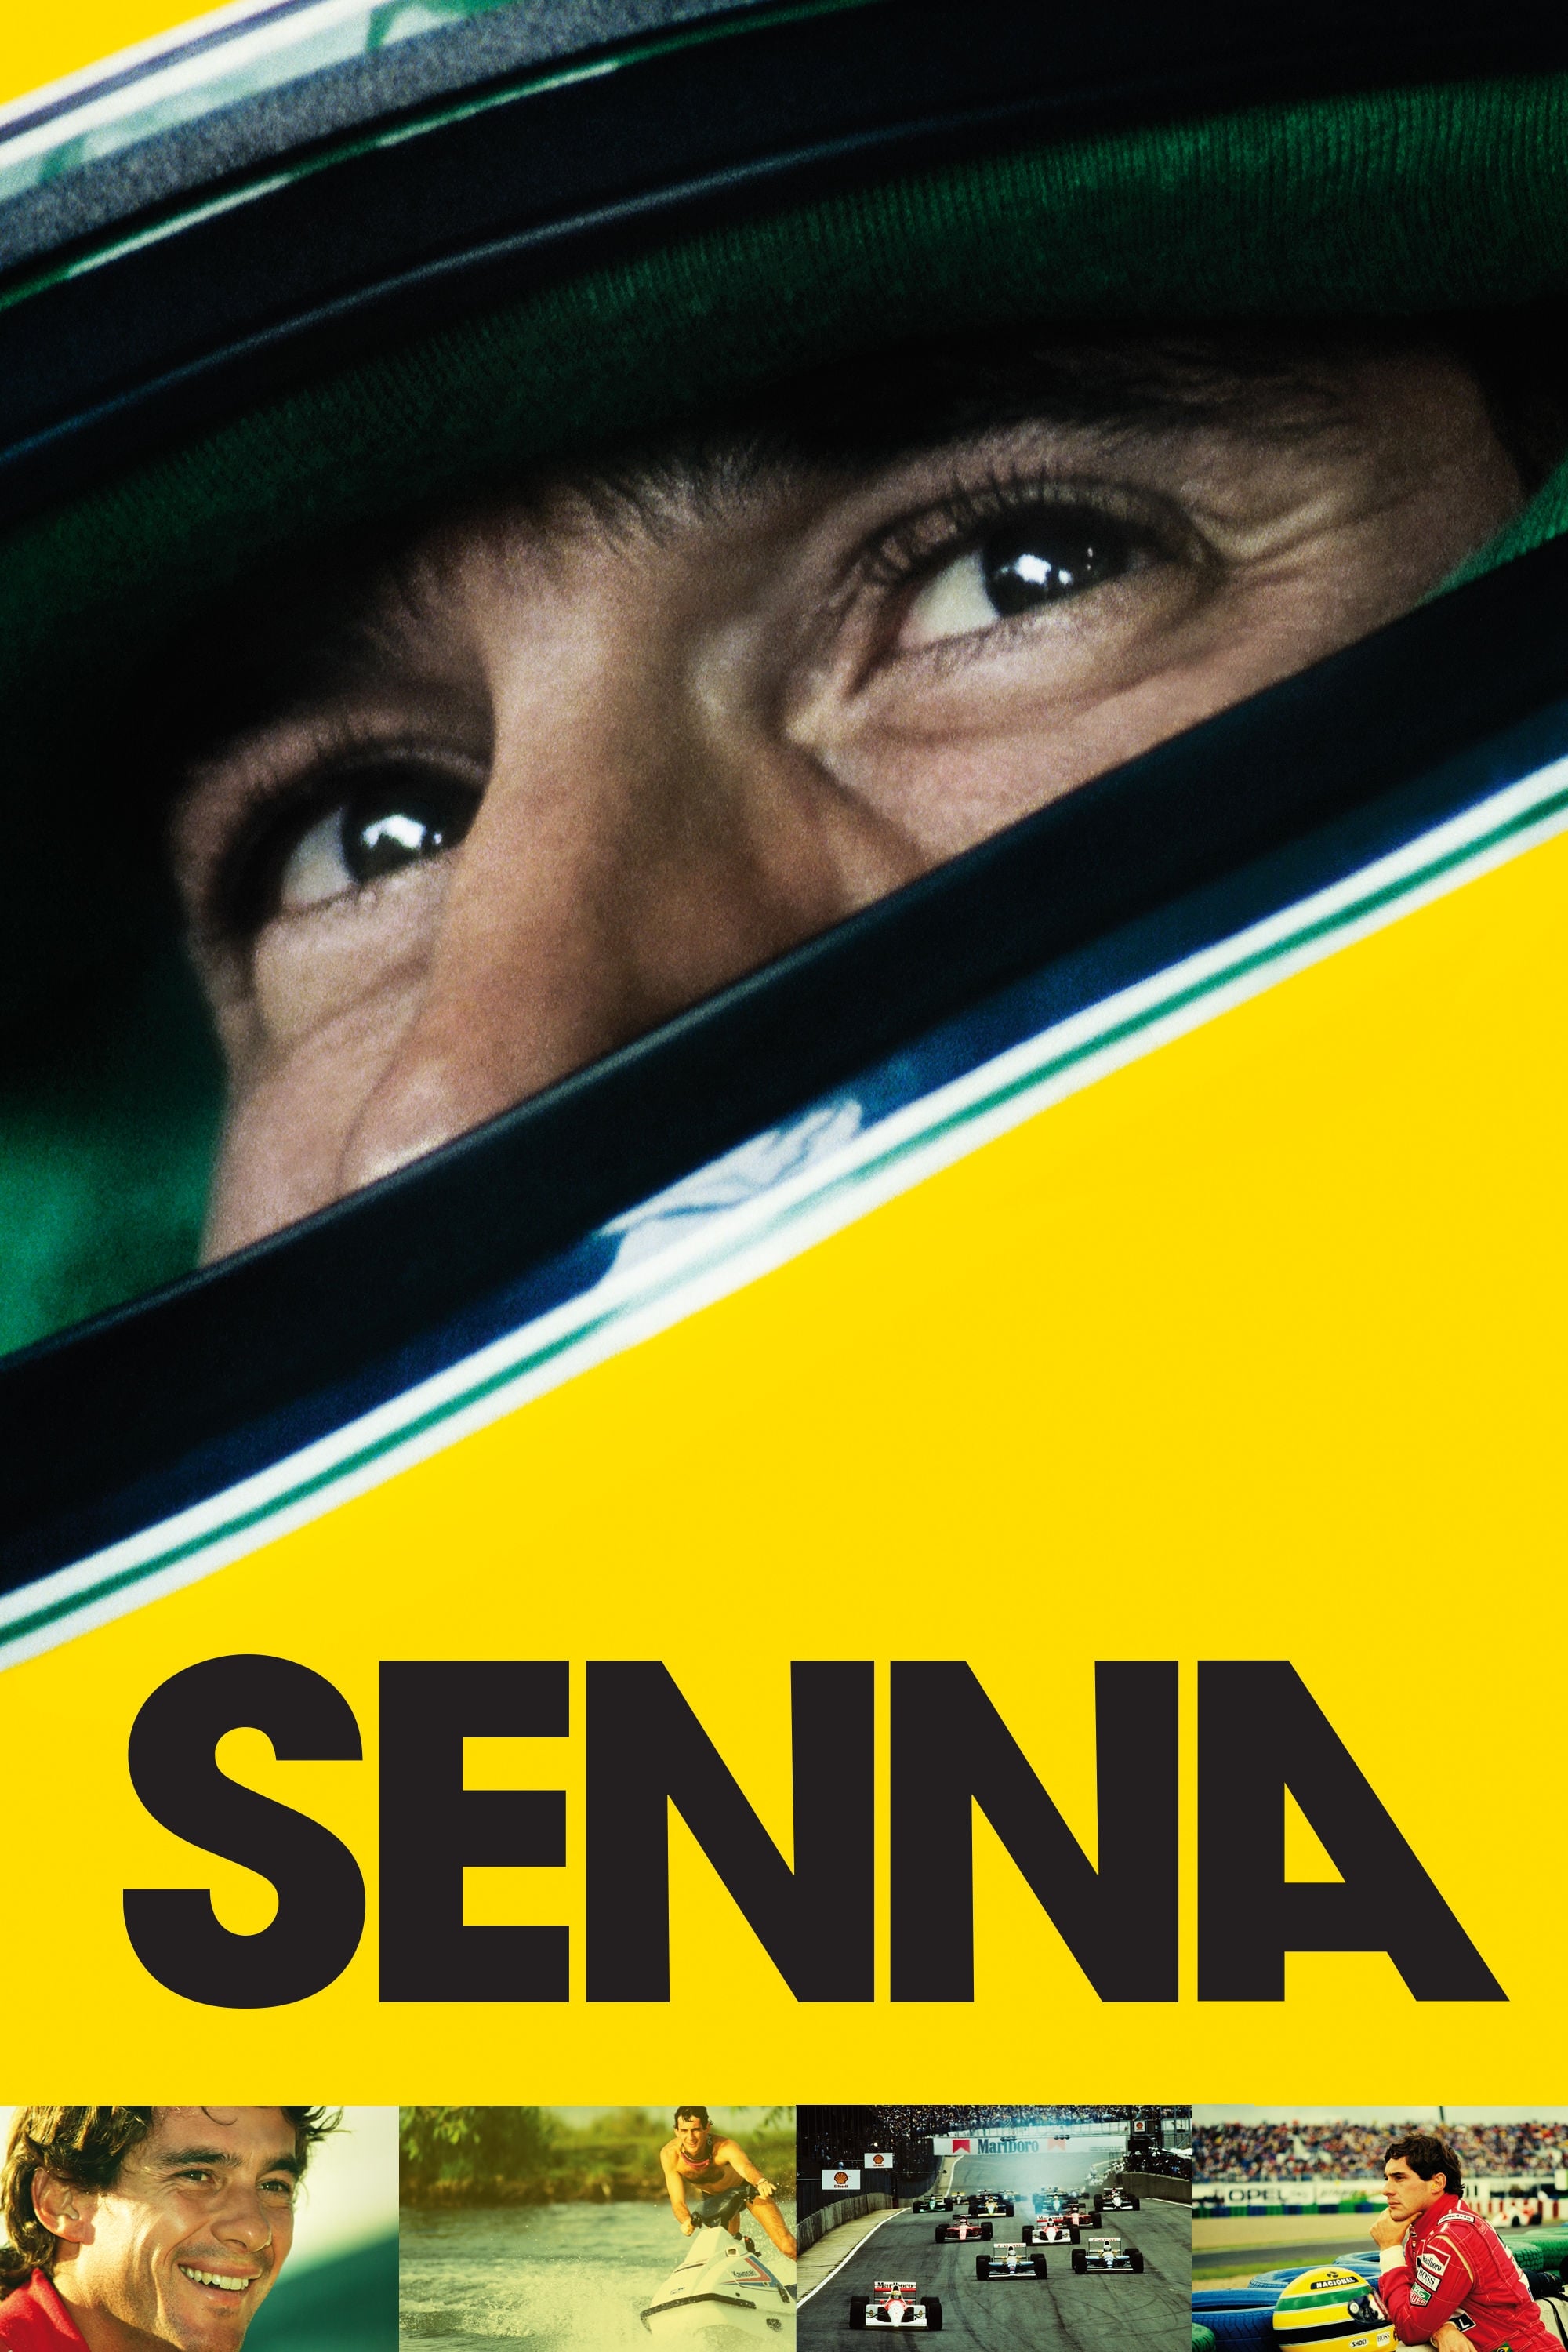 Senna (Senna) [2010]